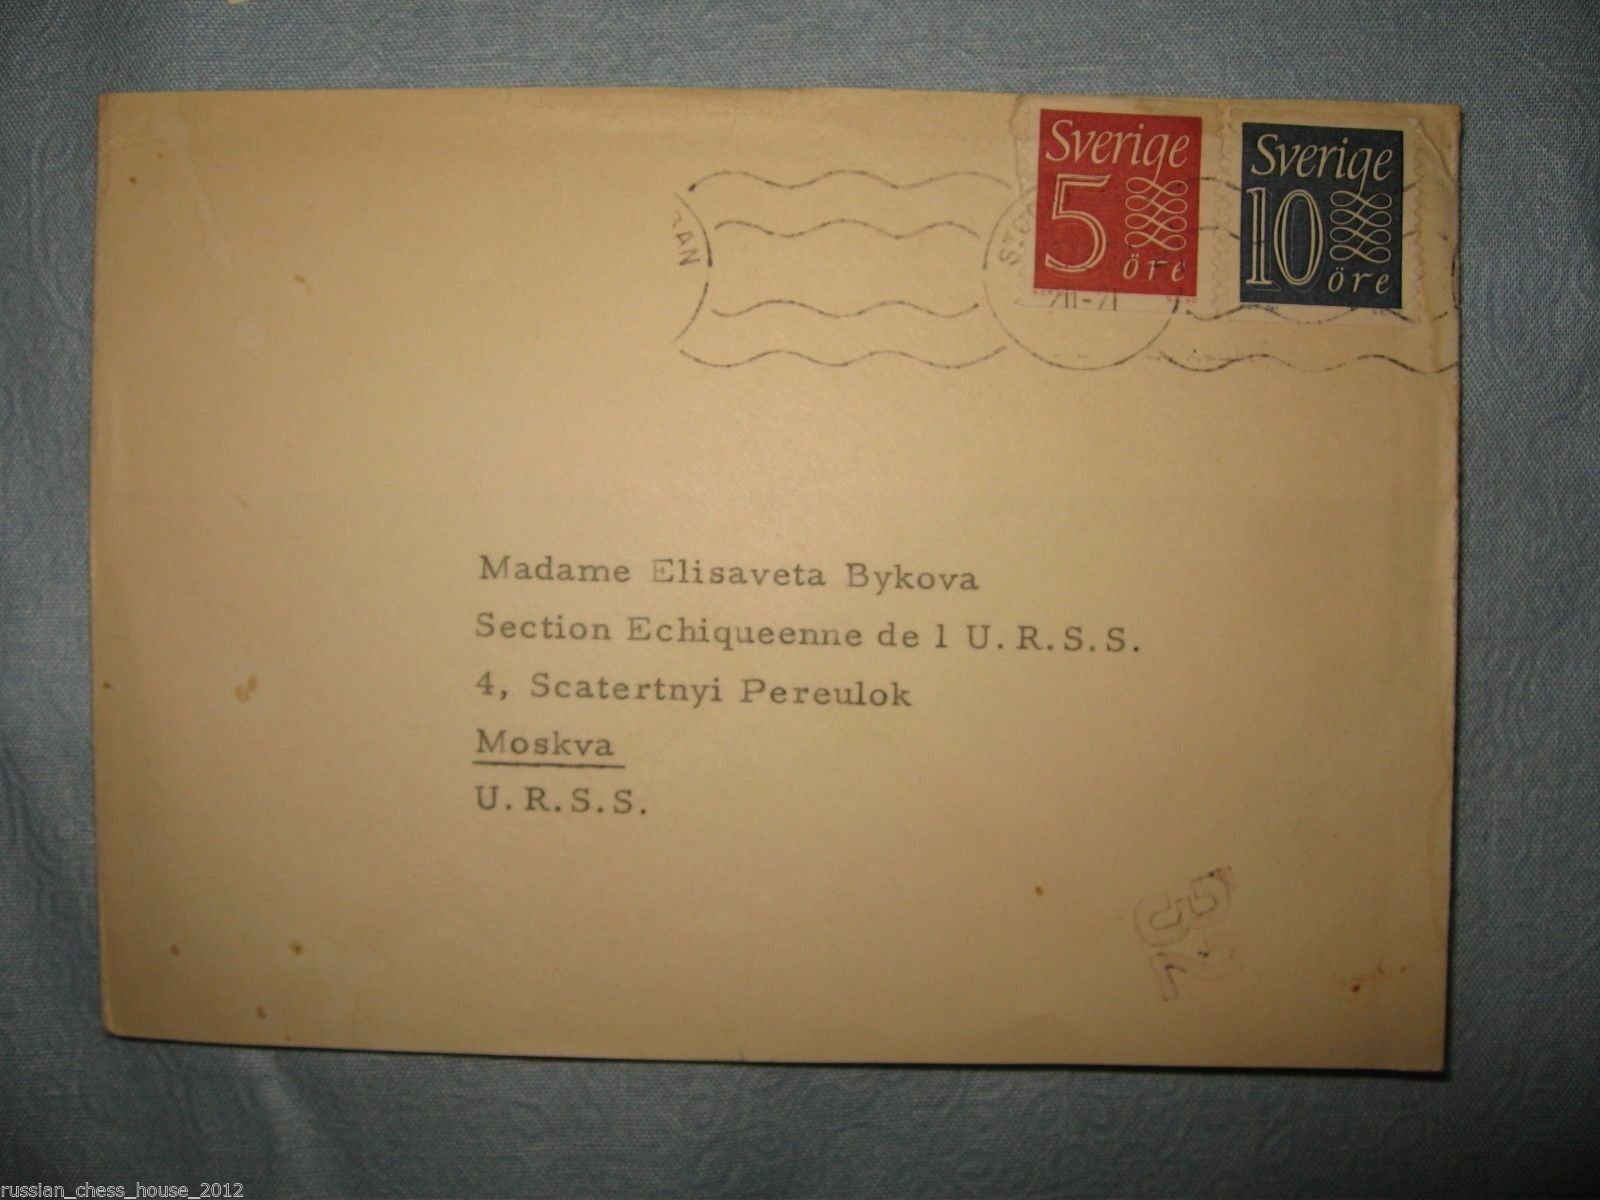 11886.The envelope from FIDE president to Elisaveta Bykova 1959 on french